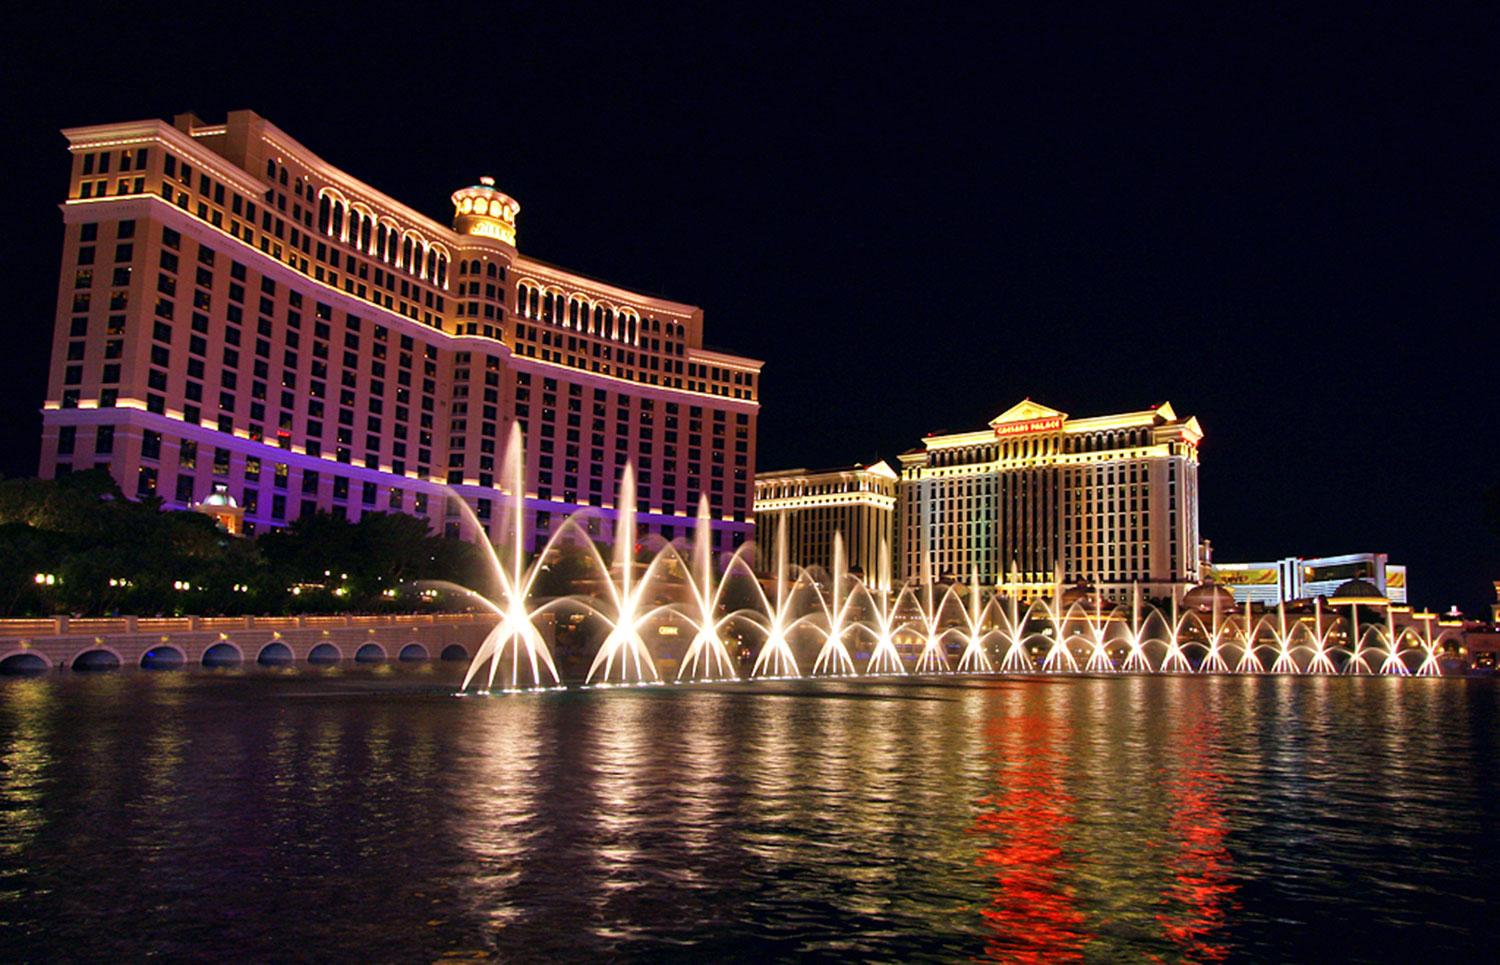 Bellagio är ett välkänt lyxhotell och kasino i Las Vegas.